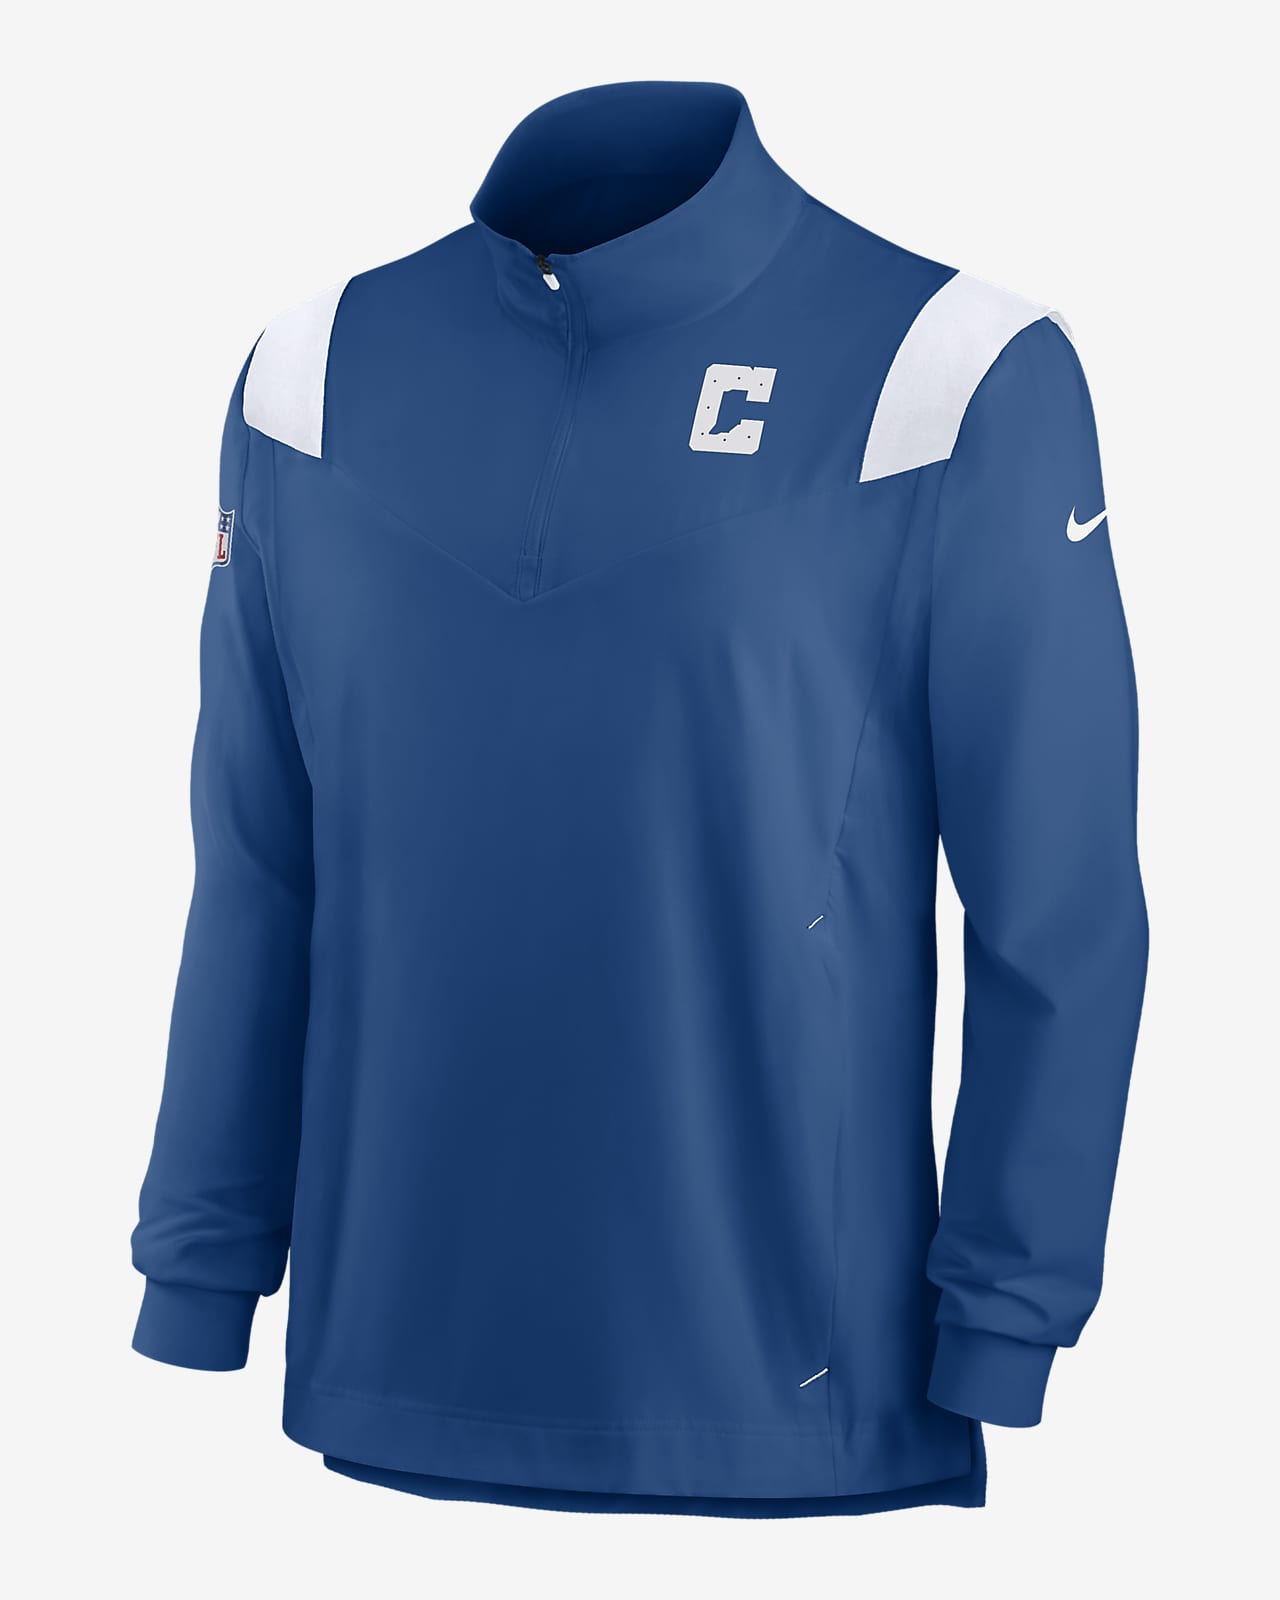 Nike Repel Coach (NFL Indianapolis Colts) Men's 1/4-Zip Jacket